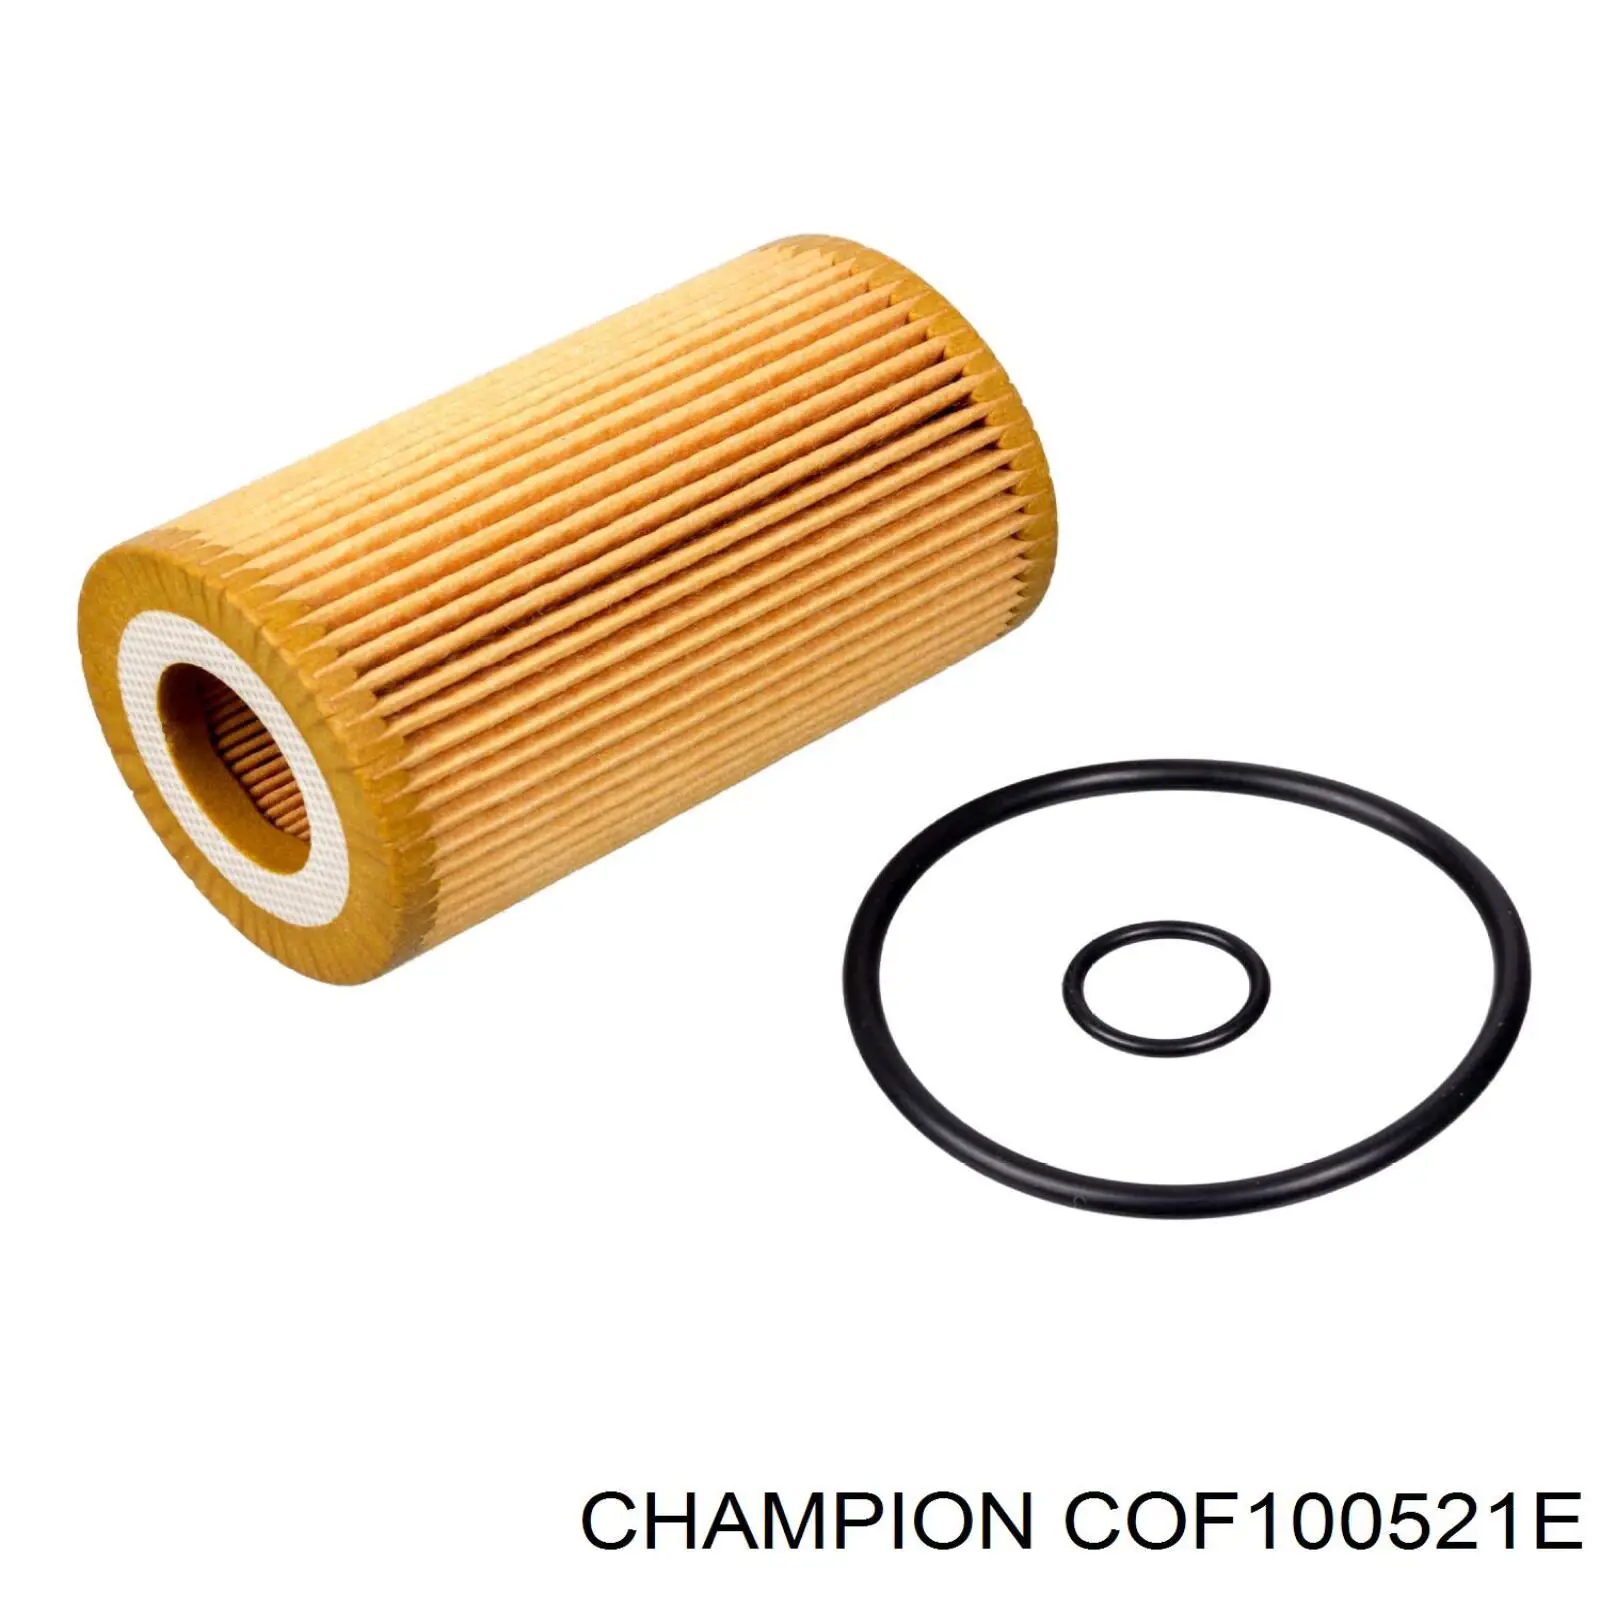 COF100521E Champion filtro de aceite